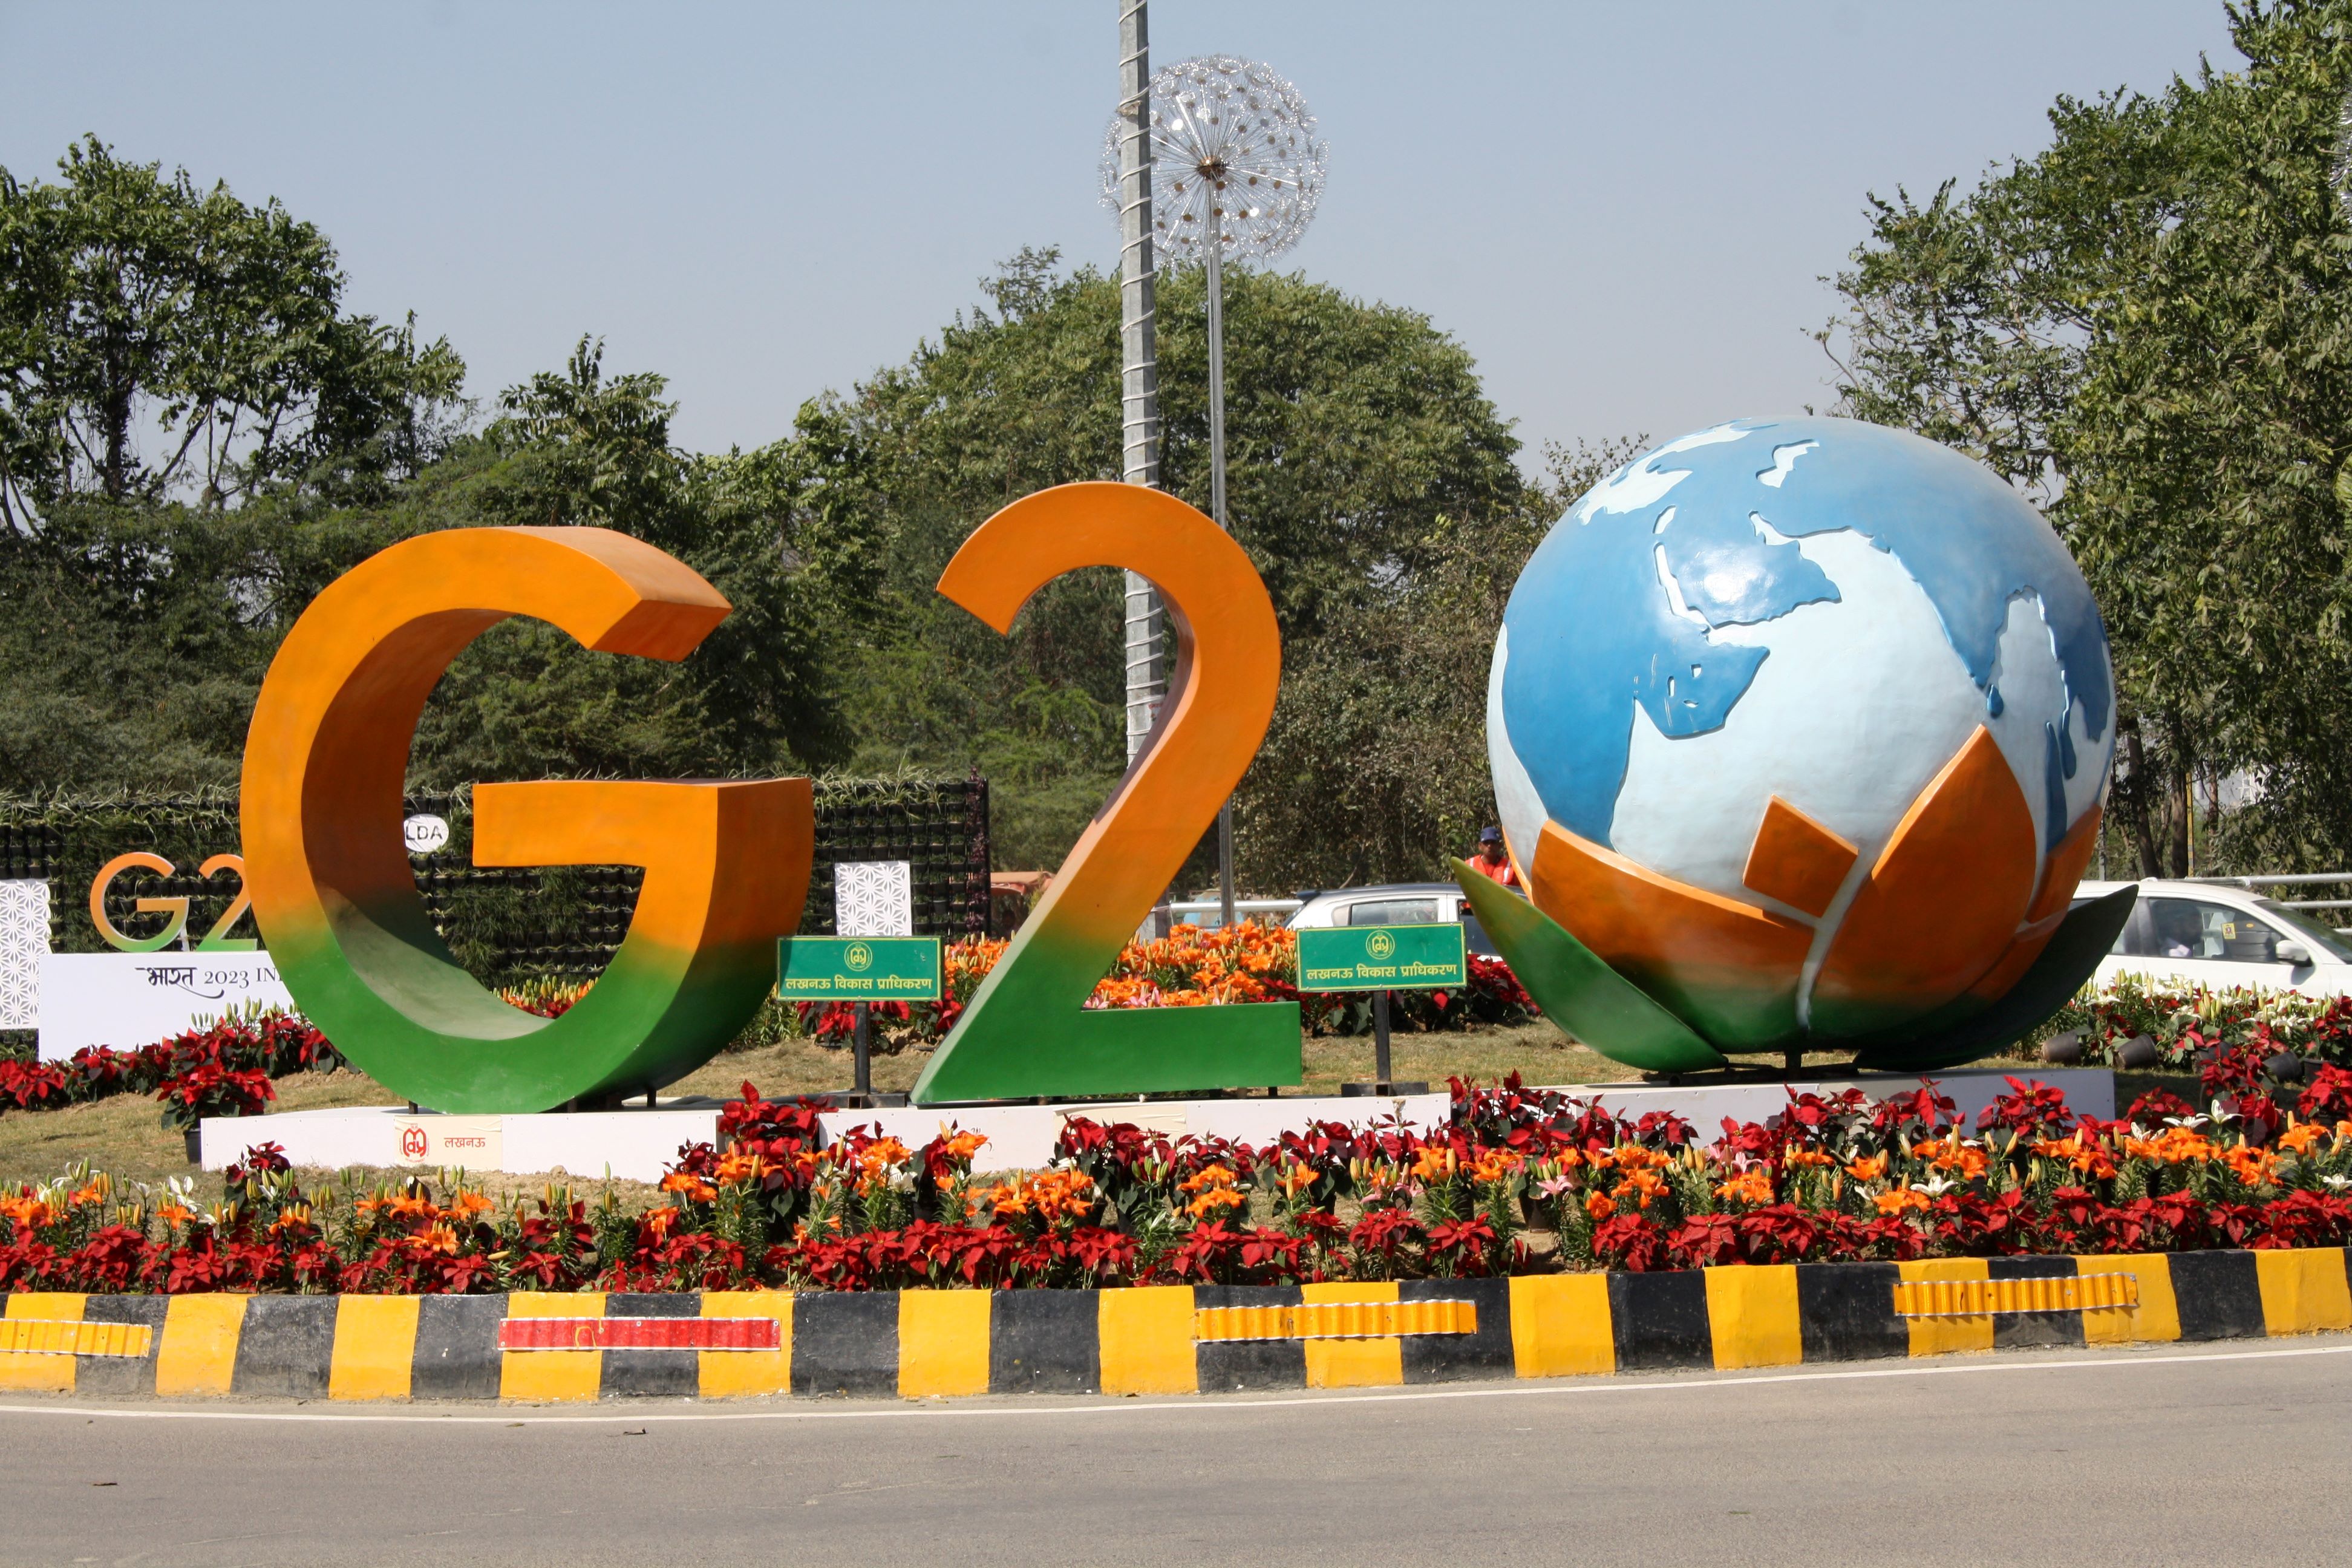 G20 India logo